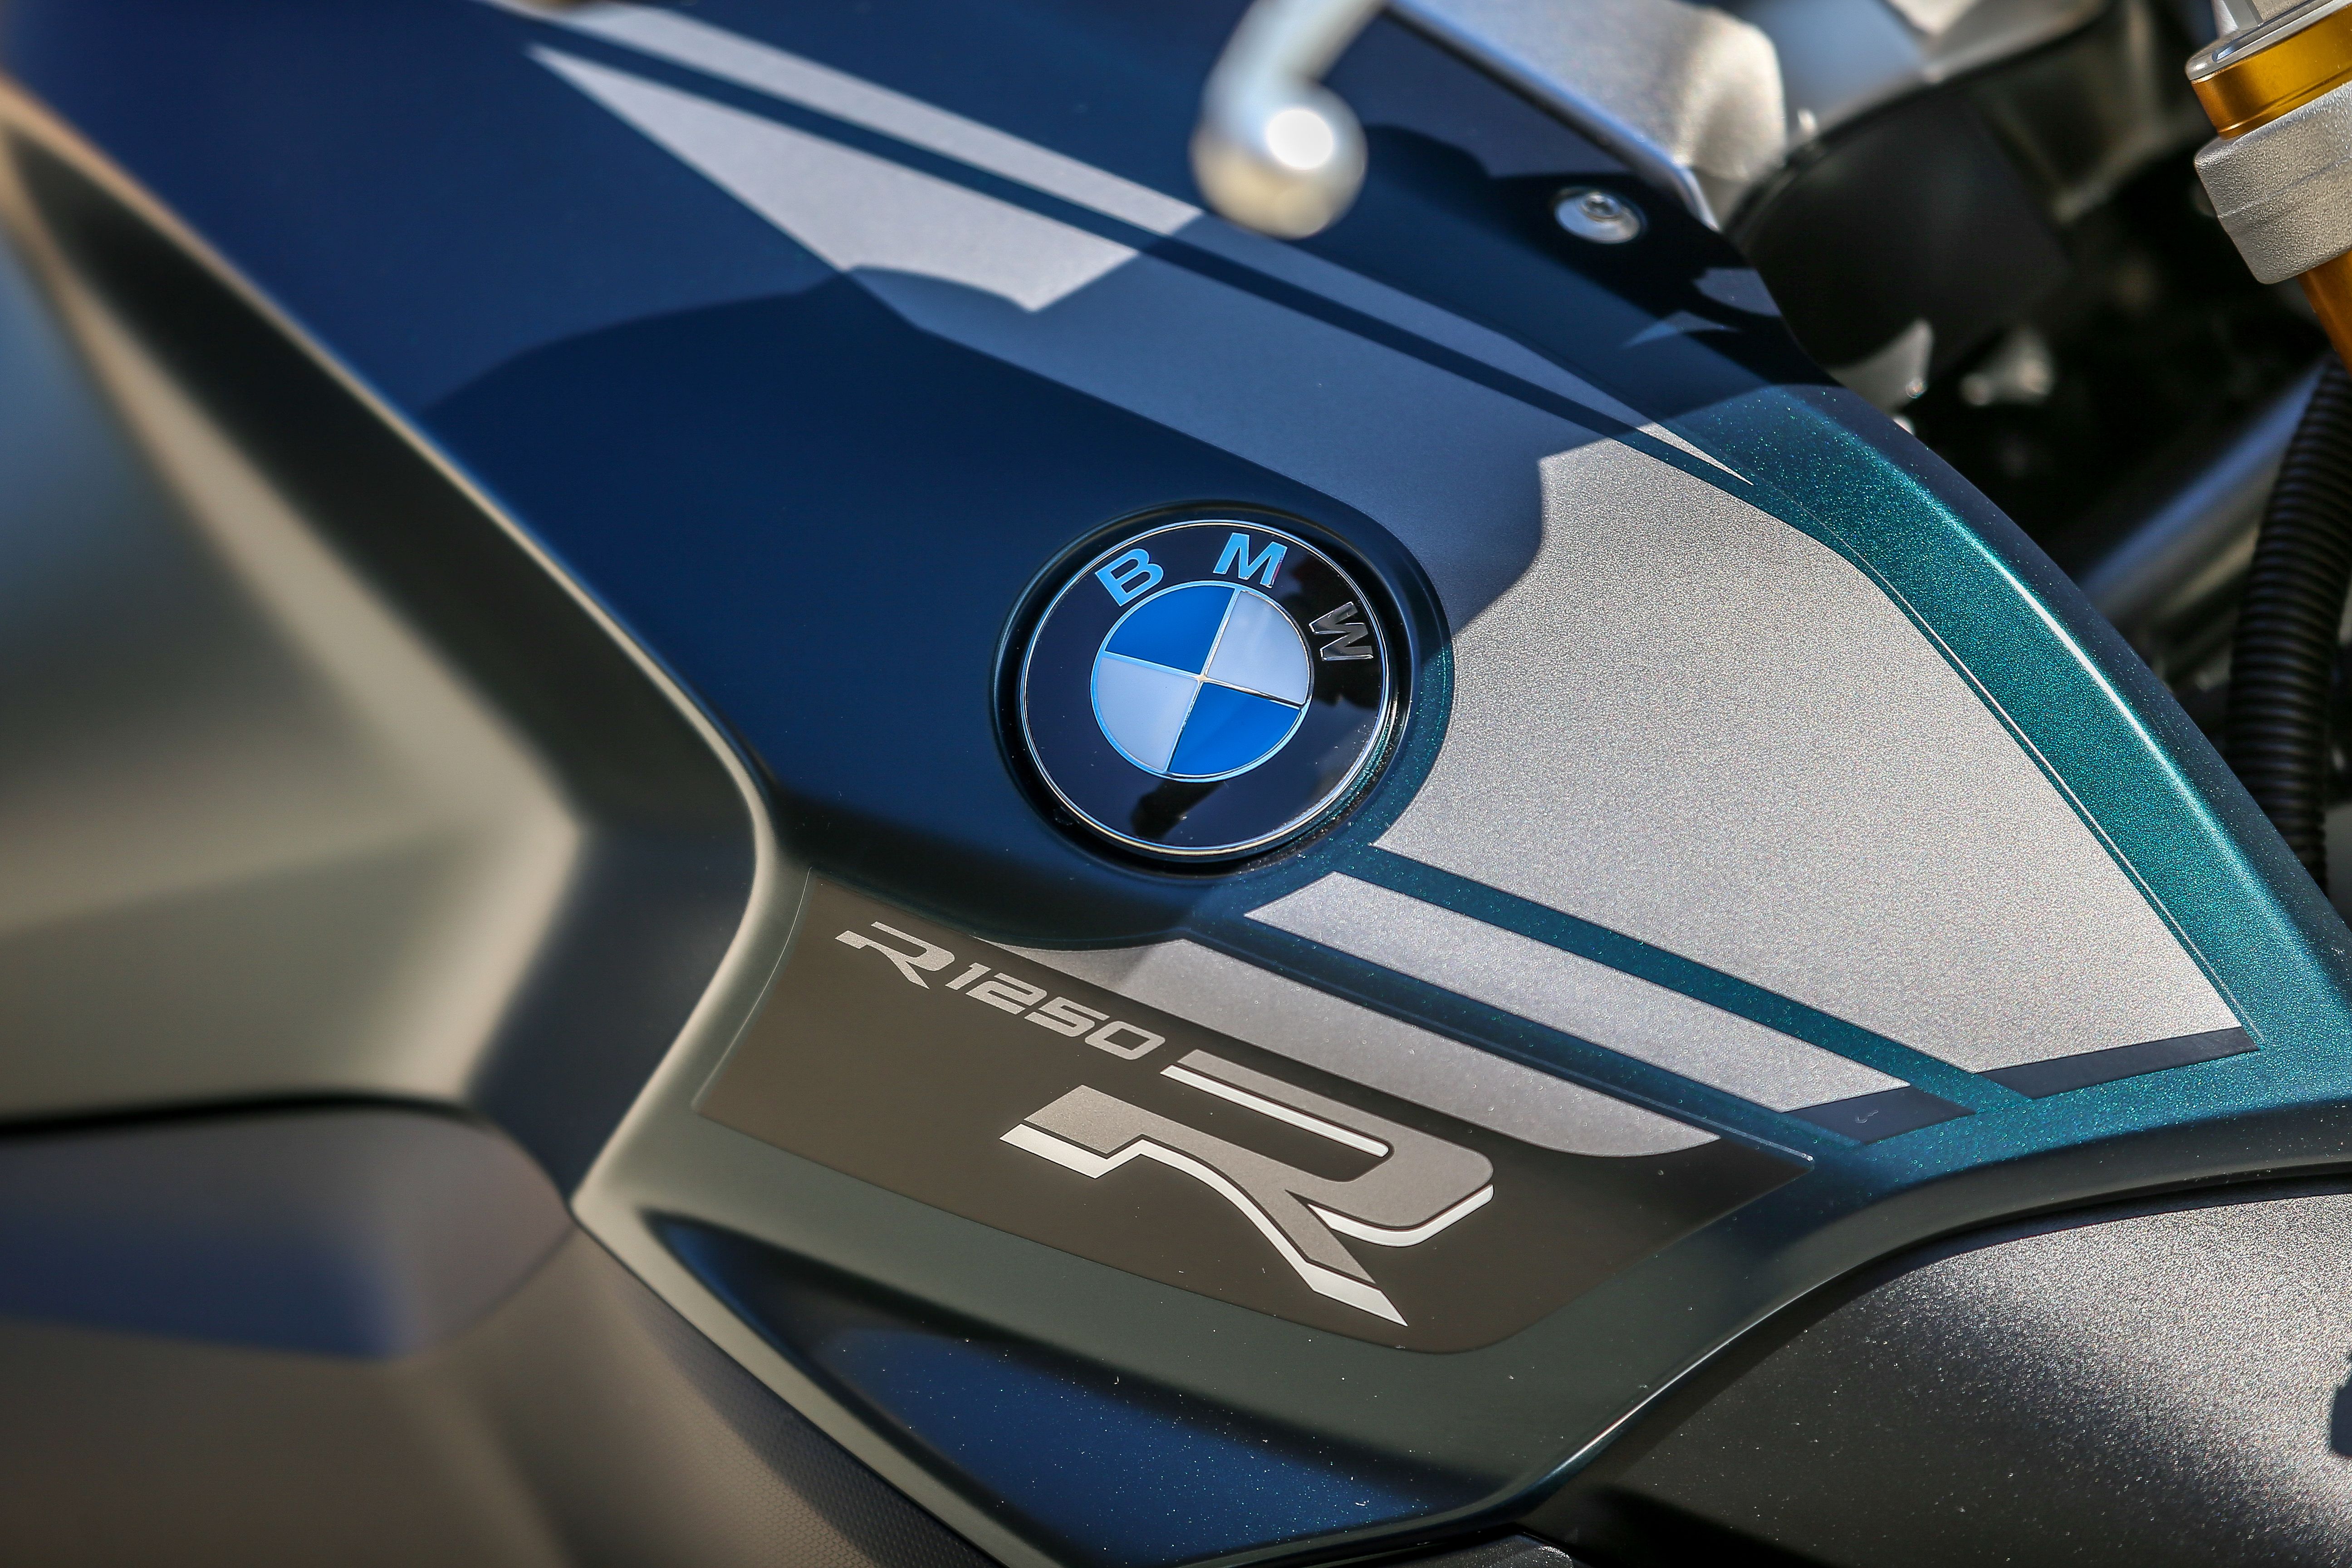 2019 - 2020 BMW R 1250 R / RS